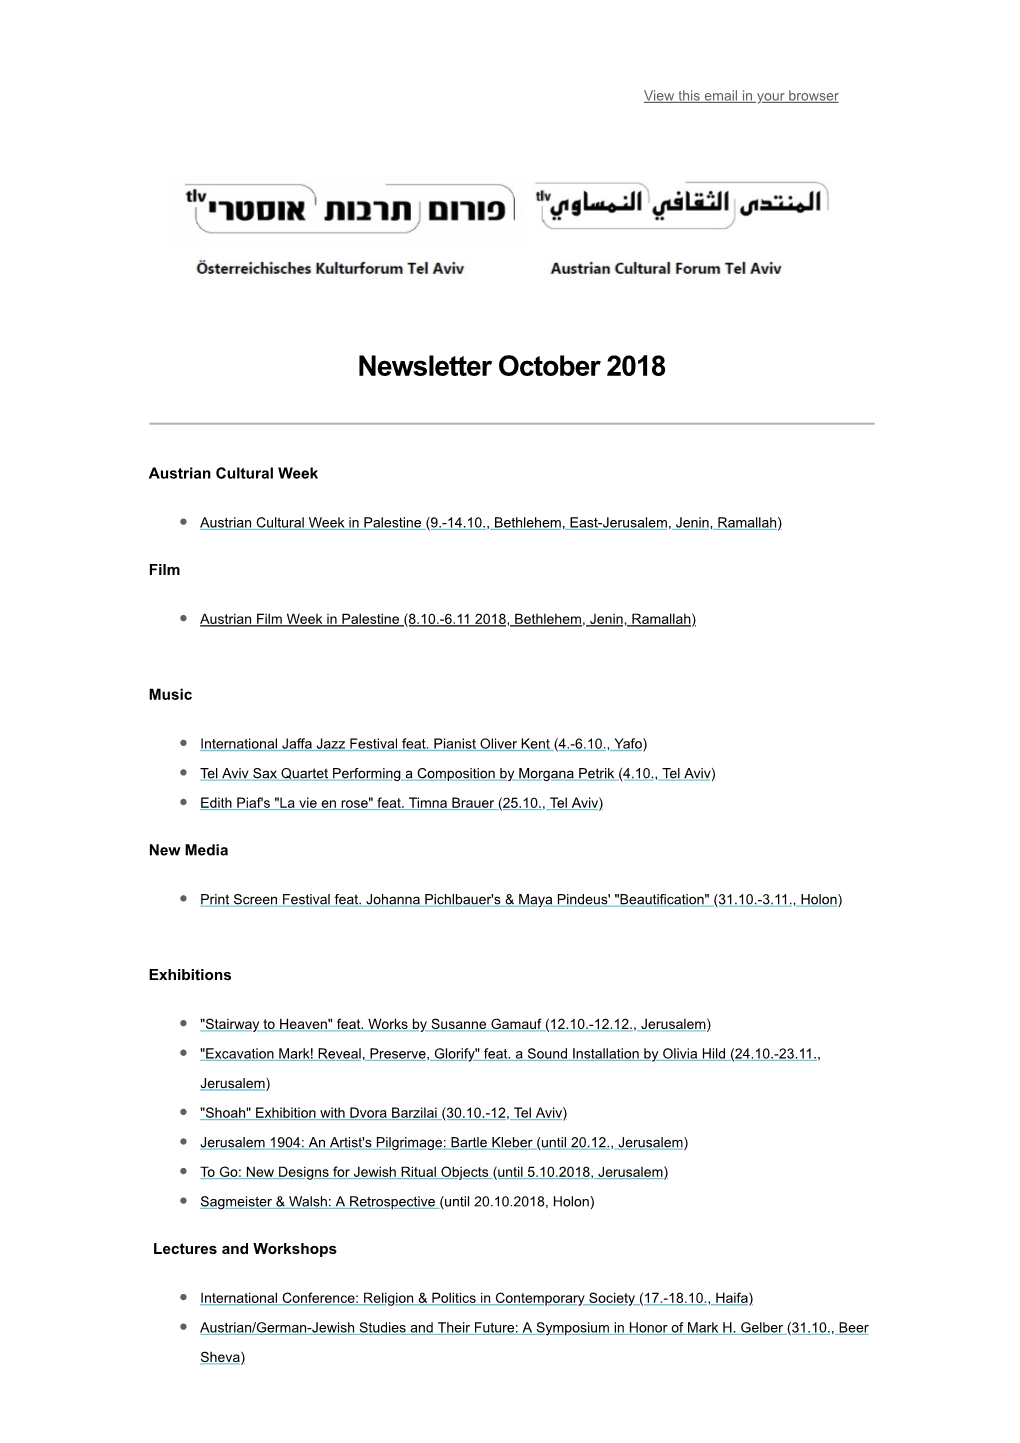 Newsletter October 2018